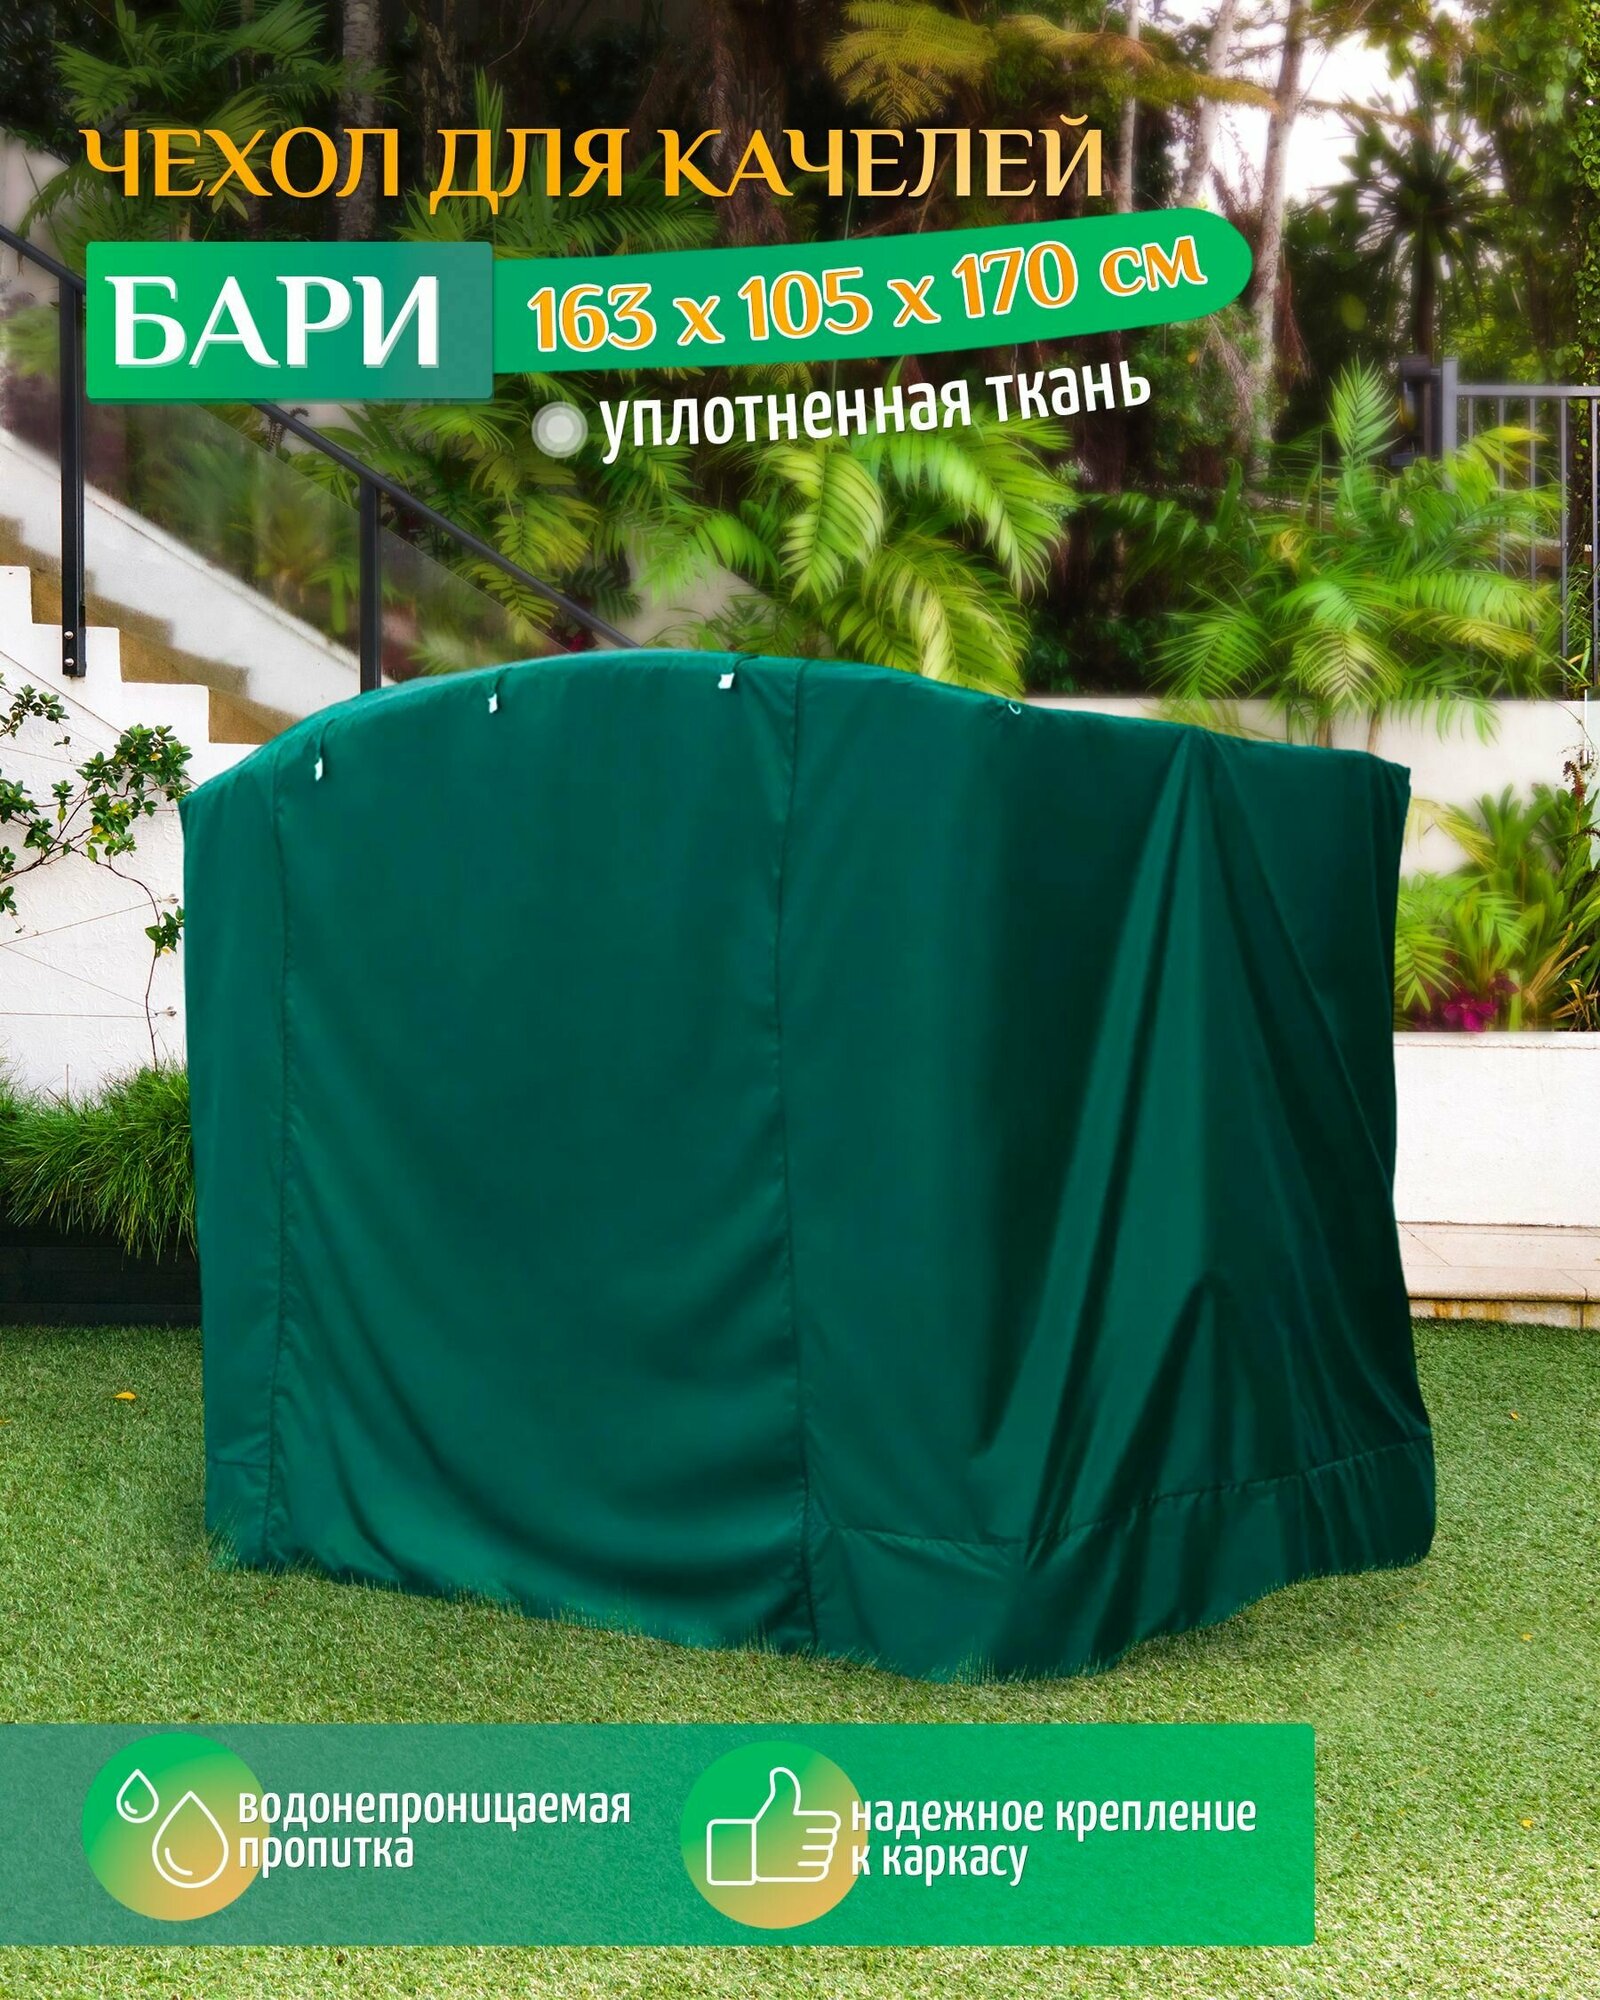 Чехол для качелей Бари (163х105х170 см) зеленый